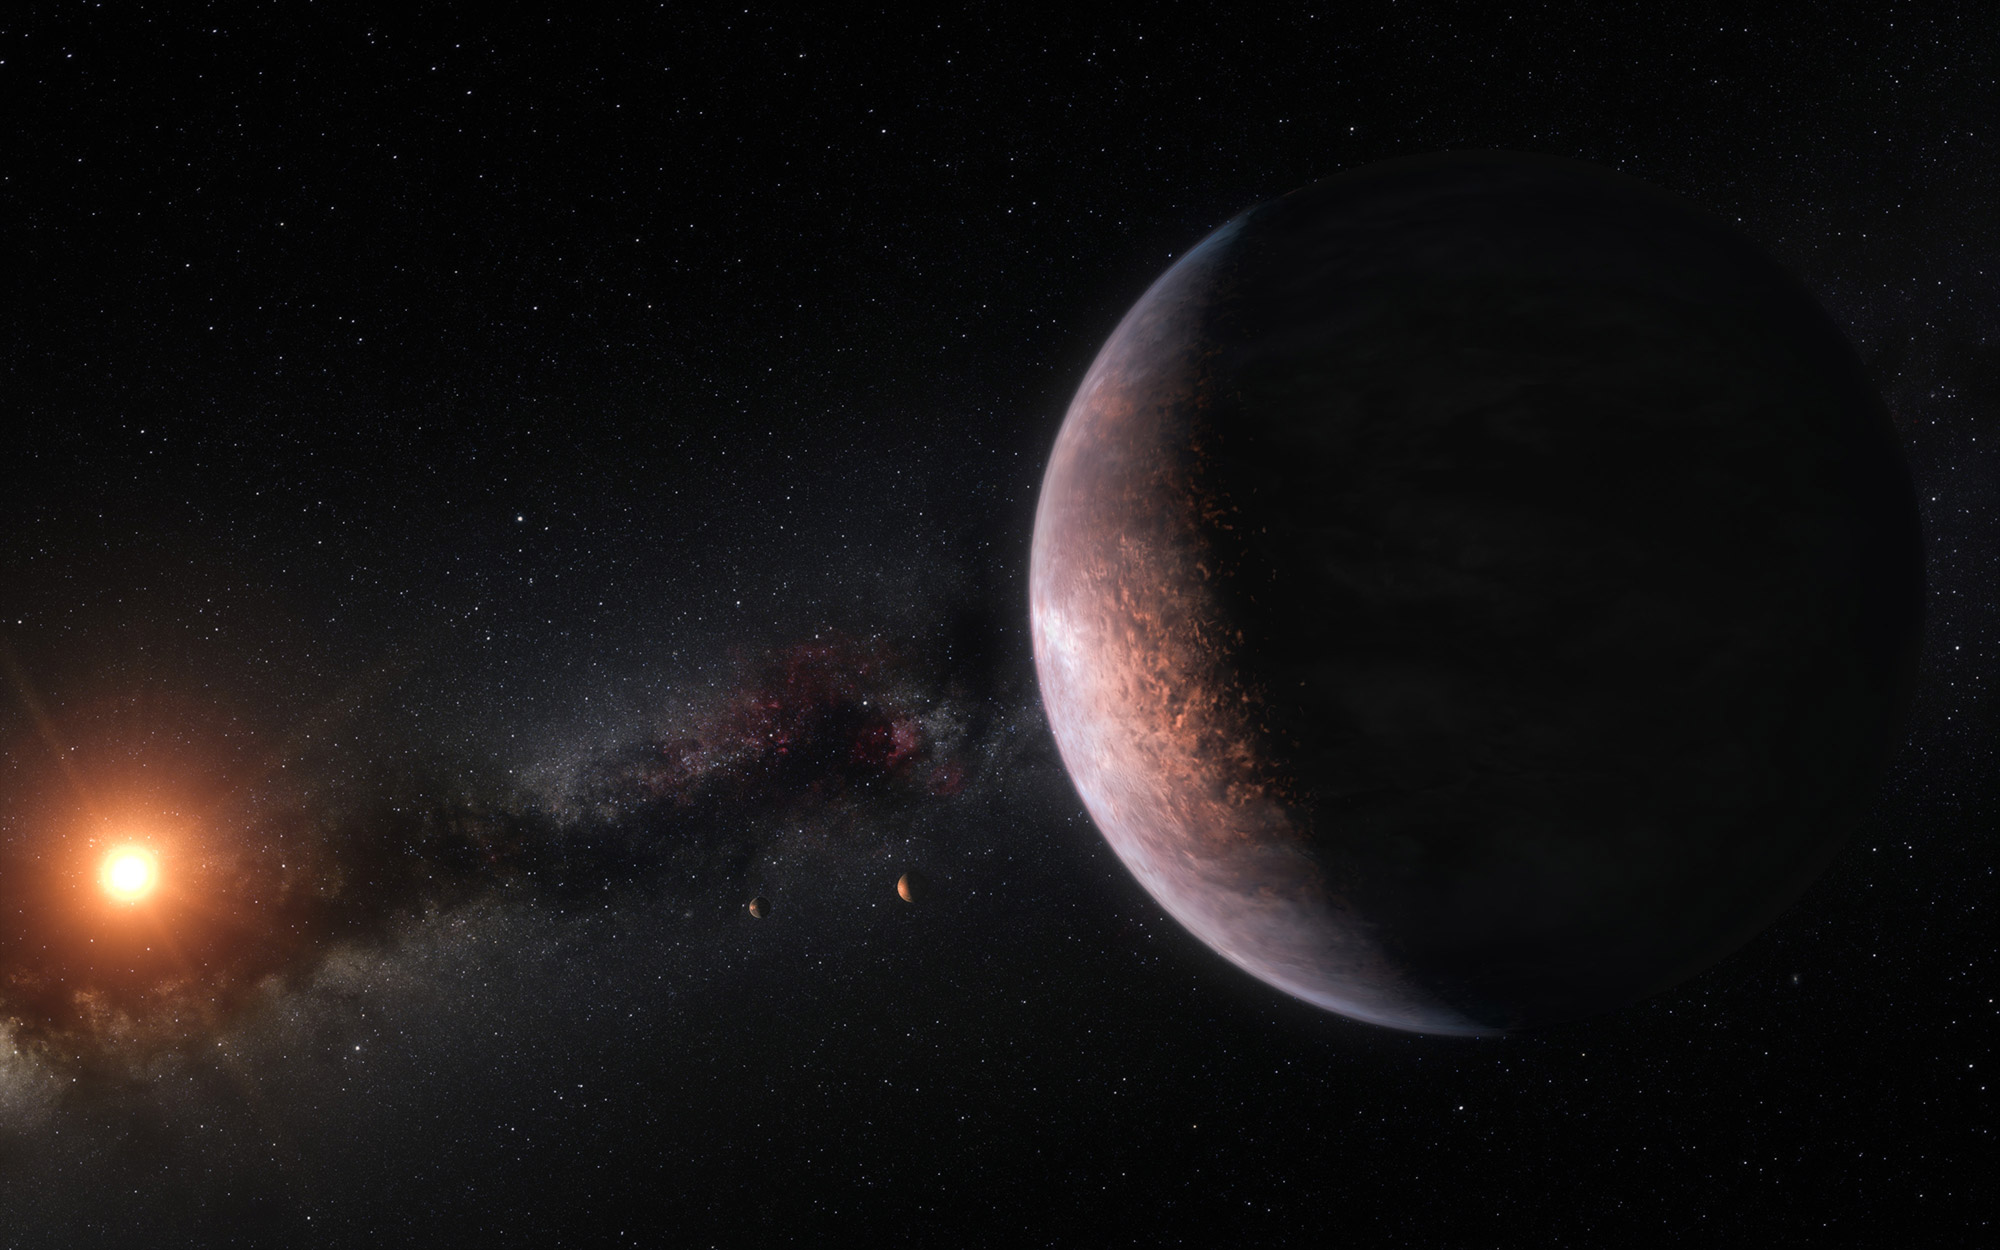 Représentation du système Trappist-1, situé à 40,5 années-lumière de la Terre. Le nouveau système planétaire découvert possède aussi une forte probabilité d'abriter de la vie extraterrestre. © ESO